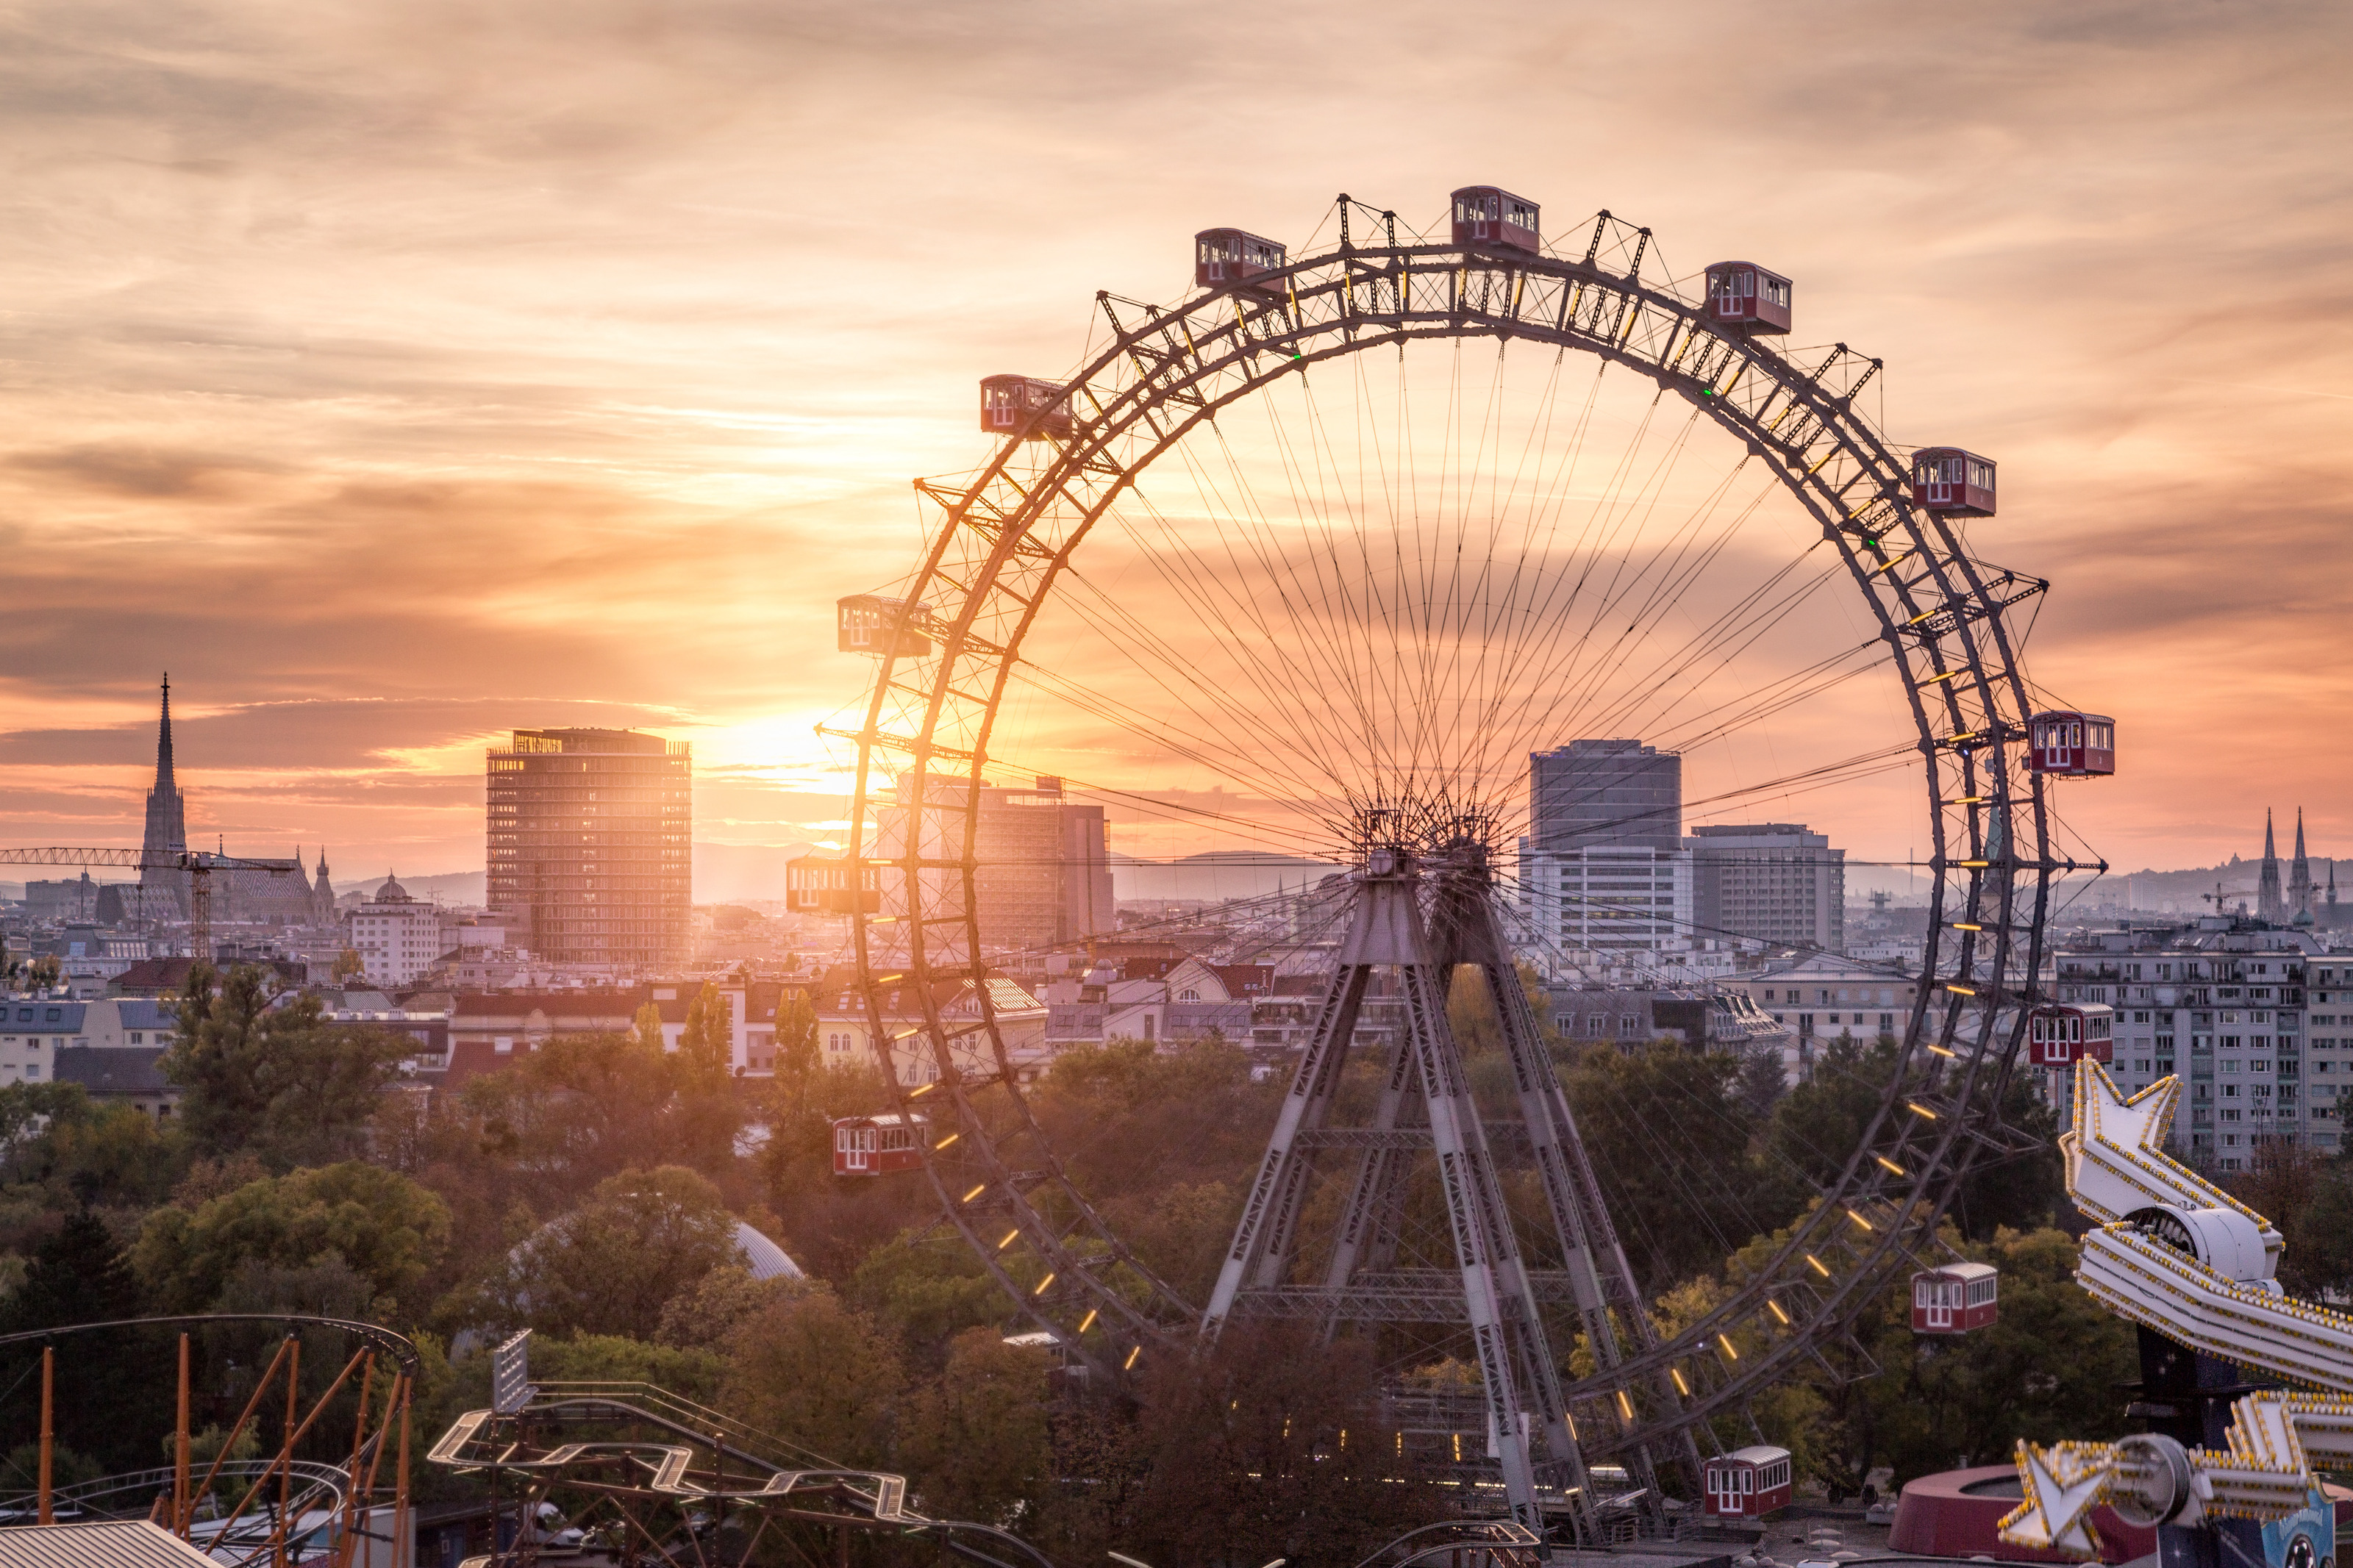 Großes Riesenrad im Wiener Prater mit roten Gondeln im Licht des Sonnenuntergangs, ringsum Baumkronen und im Hintergrund Gebäude der Stadt